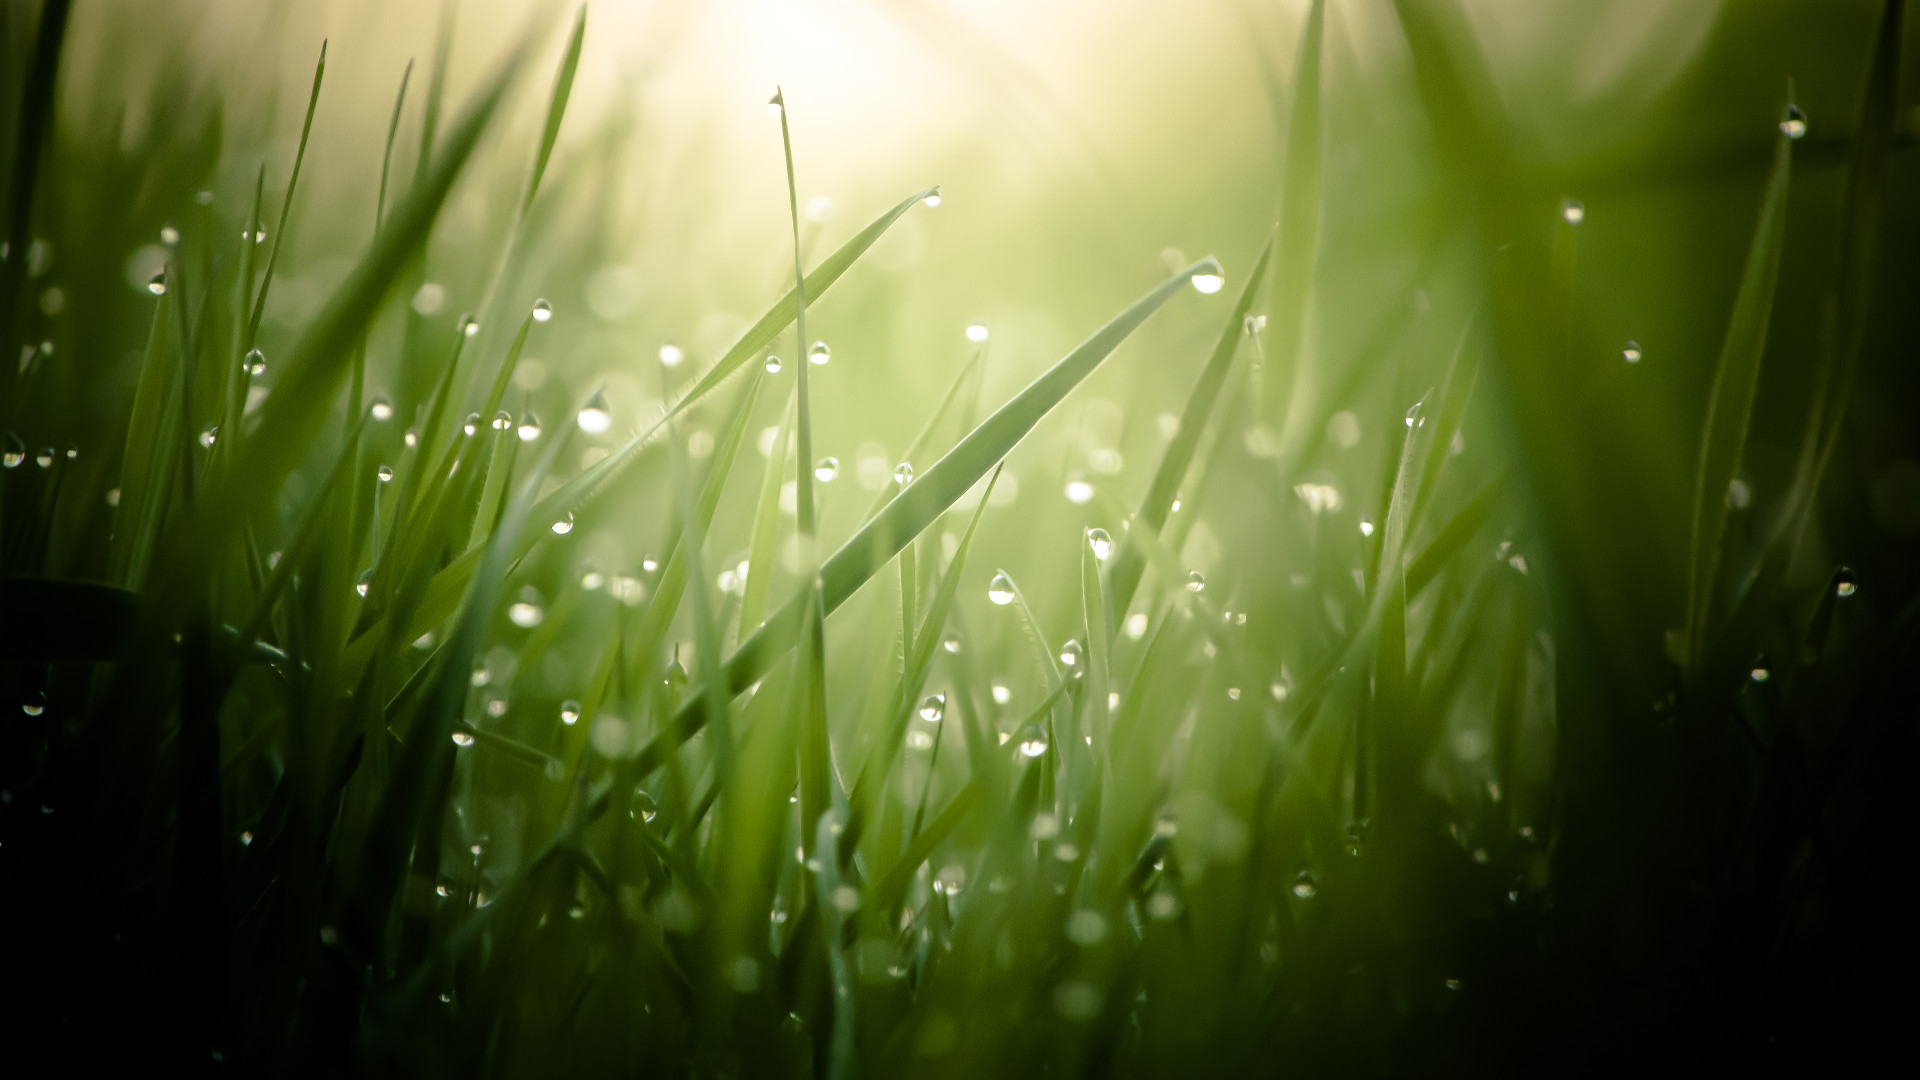 Wallpaper Grass, 4k, HD wallpaper, green, drops, dew, sun ...